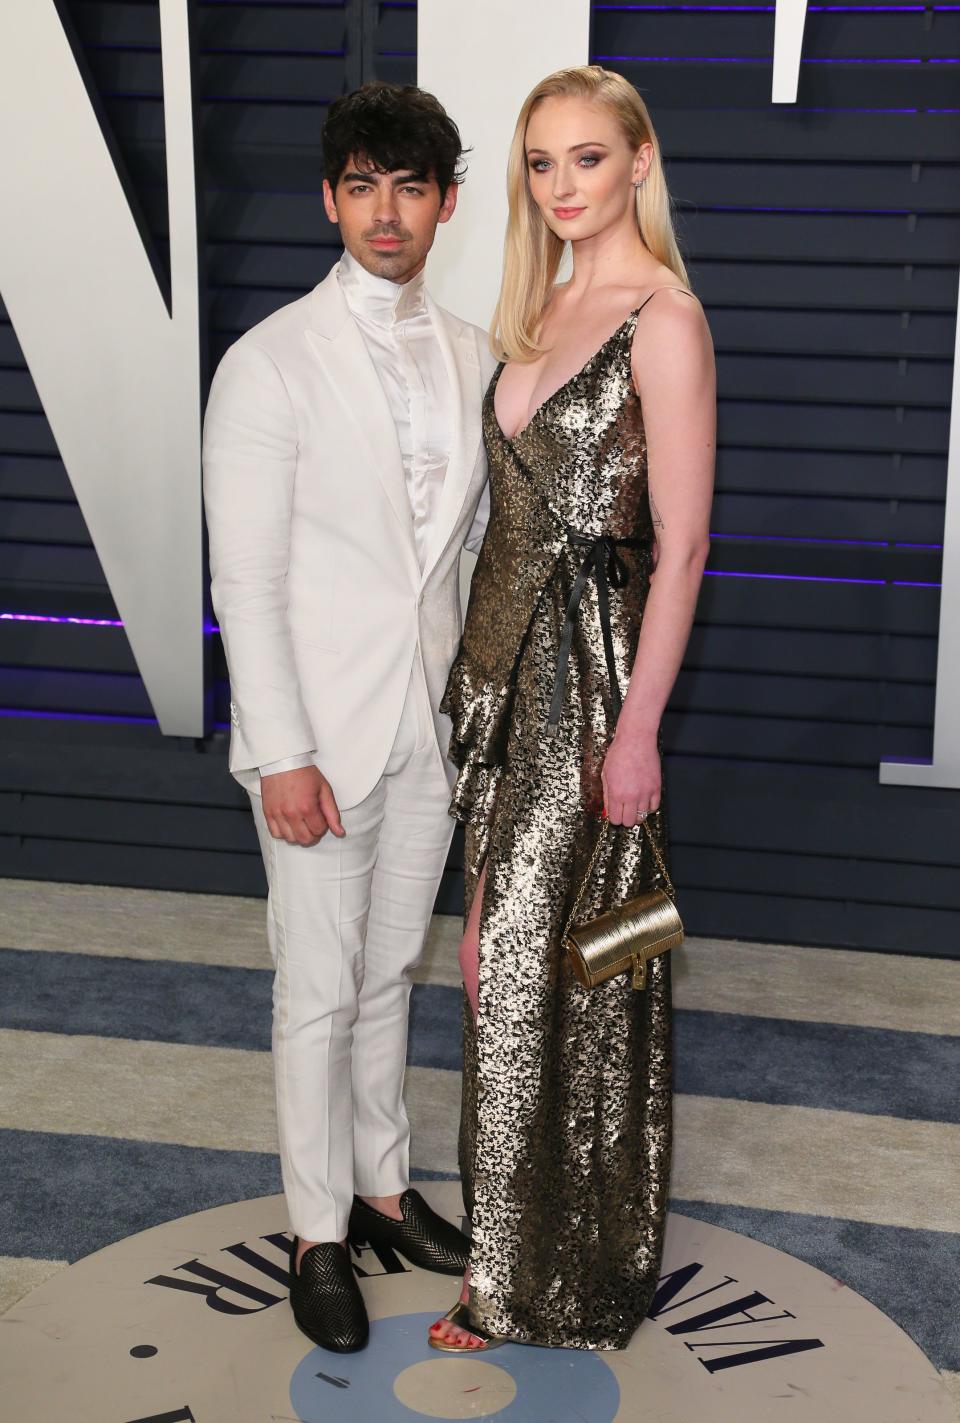 <p>Joe trägt einen Smoking ganz in Weiß, während Sophie ein metallic-schimmerndes Wickelkleid anhat. <em>[Foto: Getty]</em> </p>